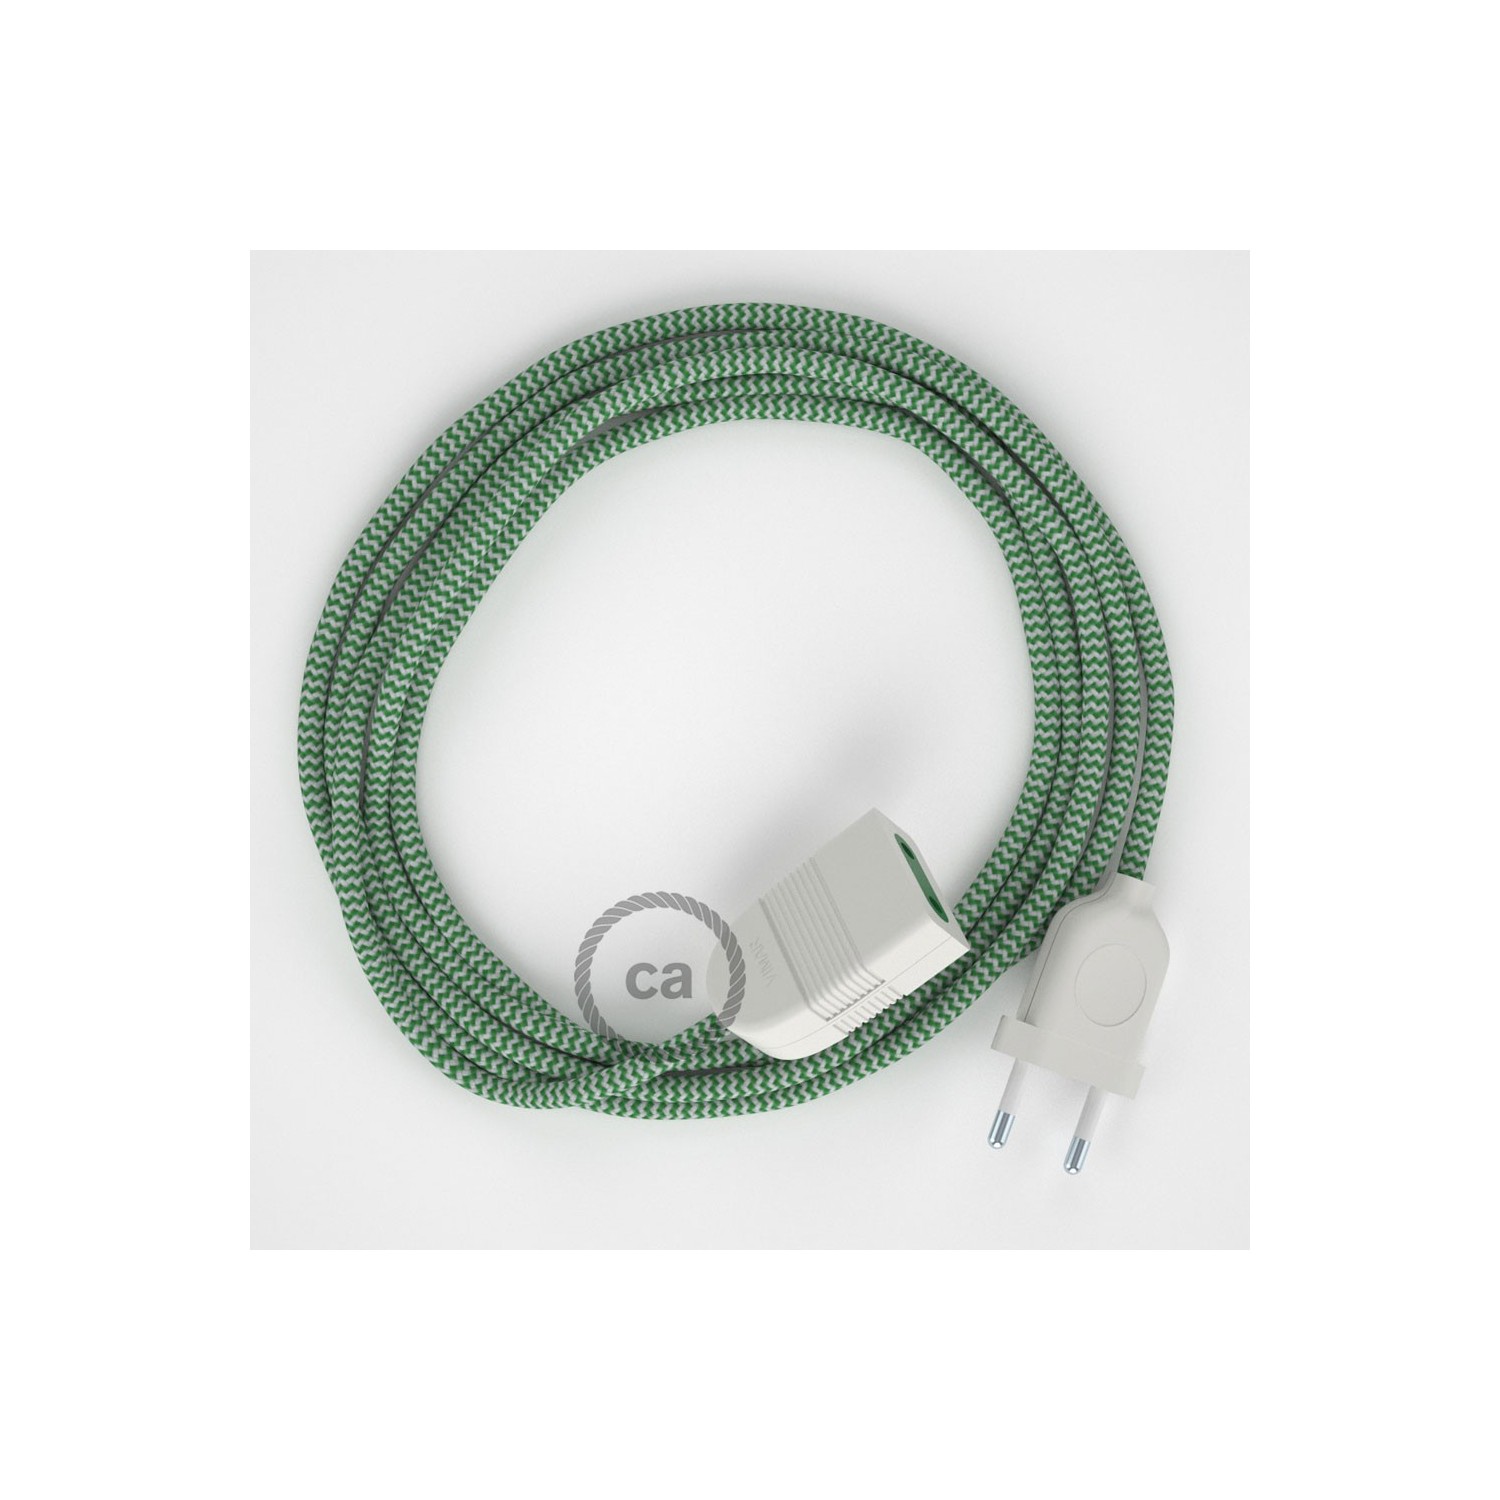 Verlengkabel 2P 10A met rond flexibel strijkijzersnoer RZ06 van groen zigzag viscose